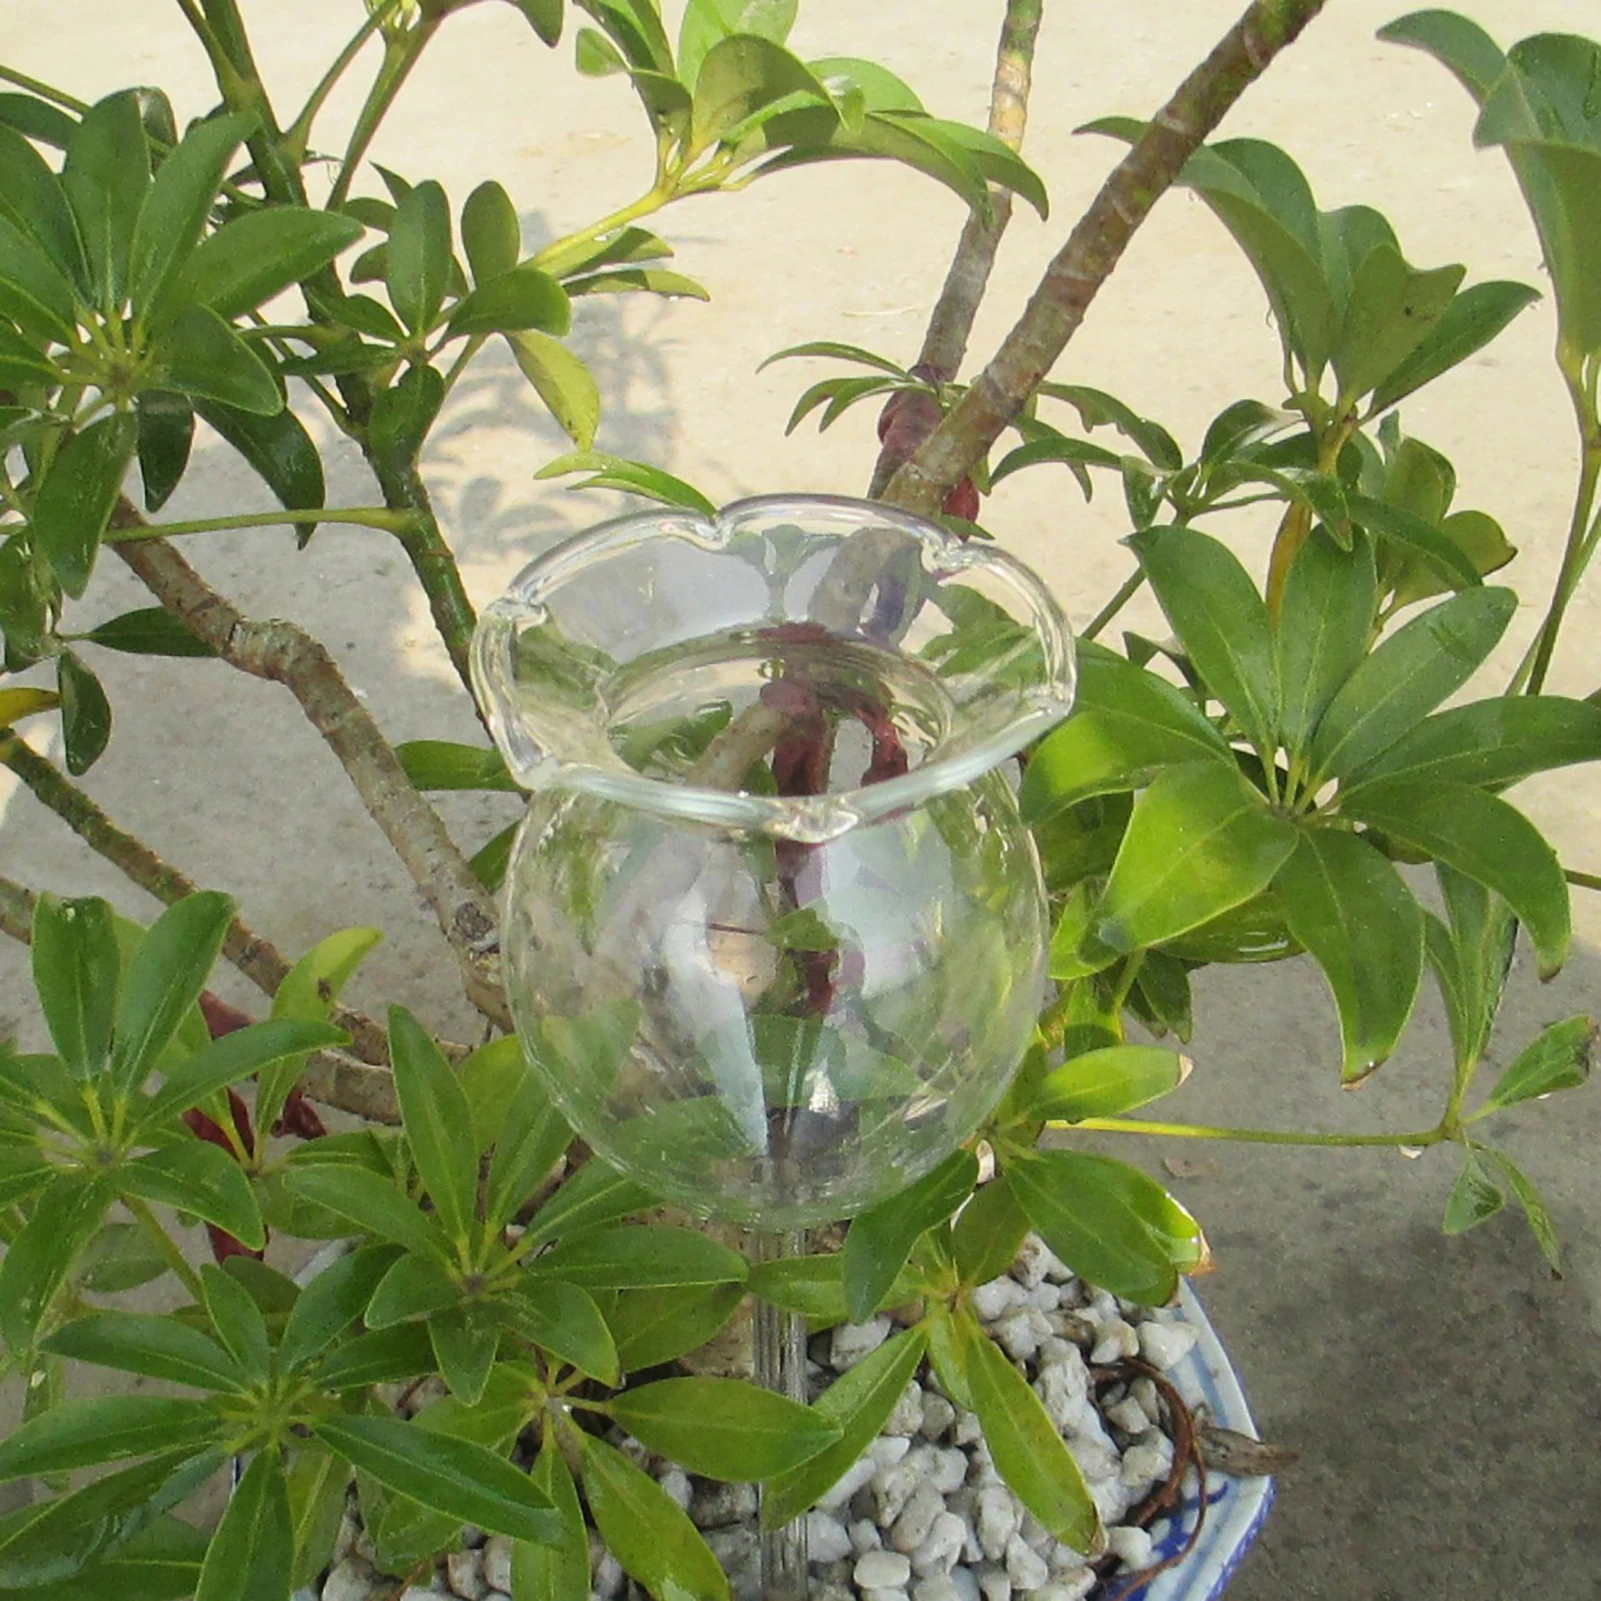 Globes d'arrosage pour Plantes, Ampoules en Verre pour Plantes à Dispositif